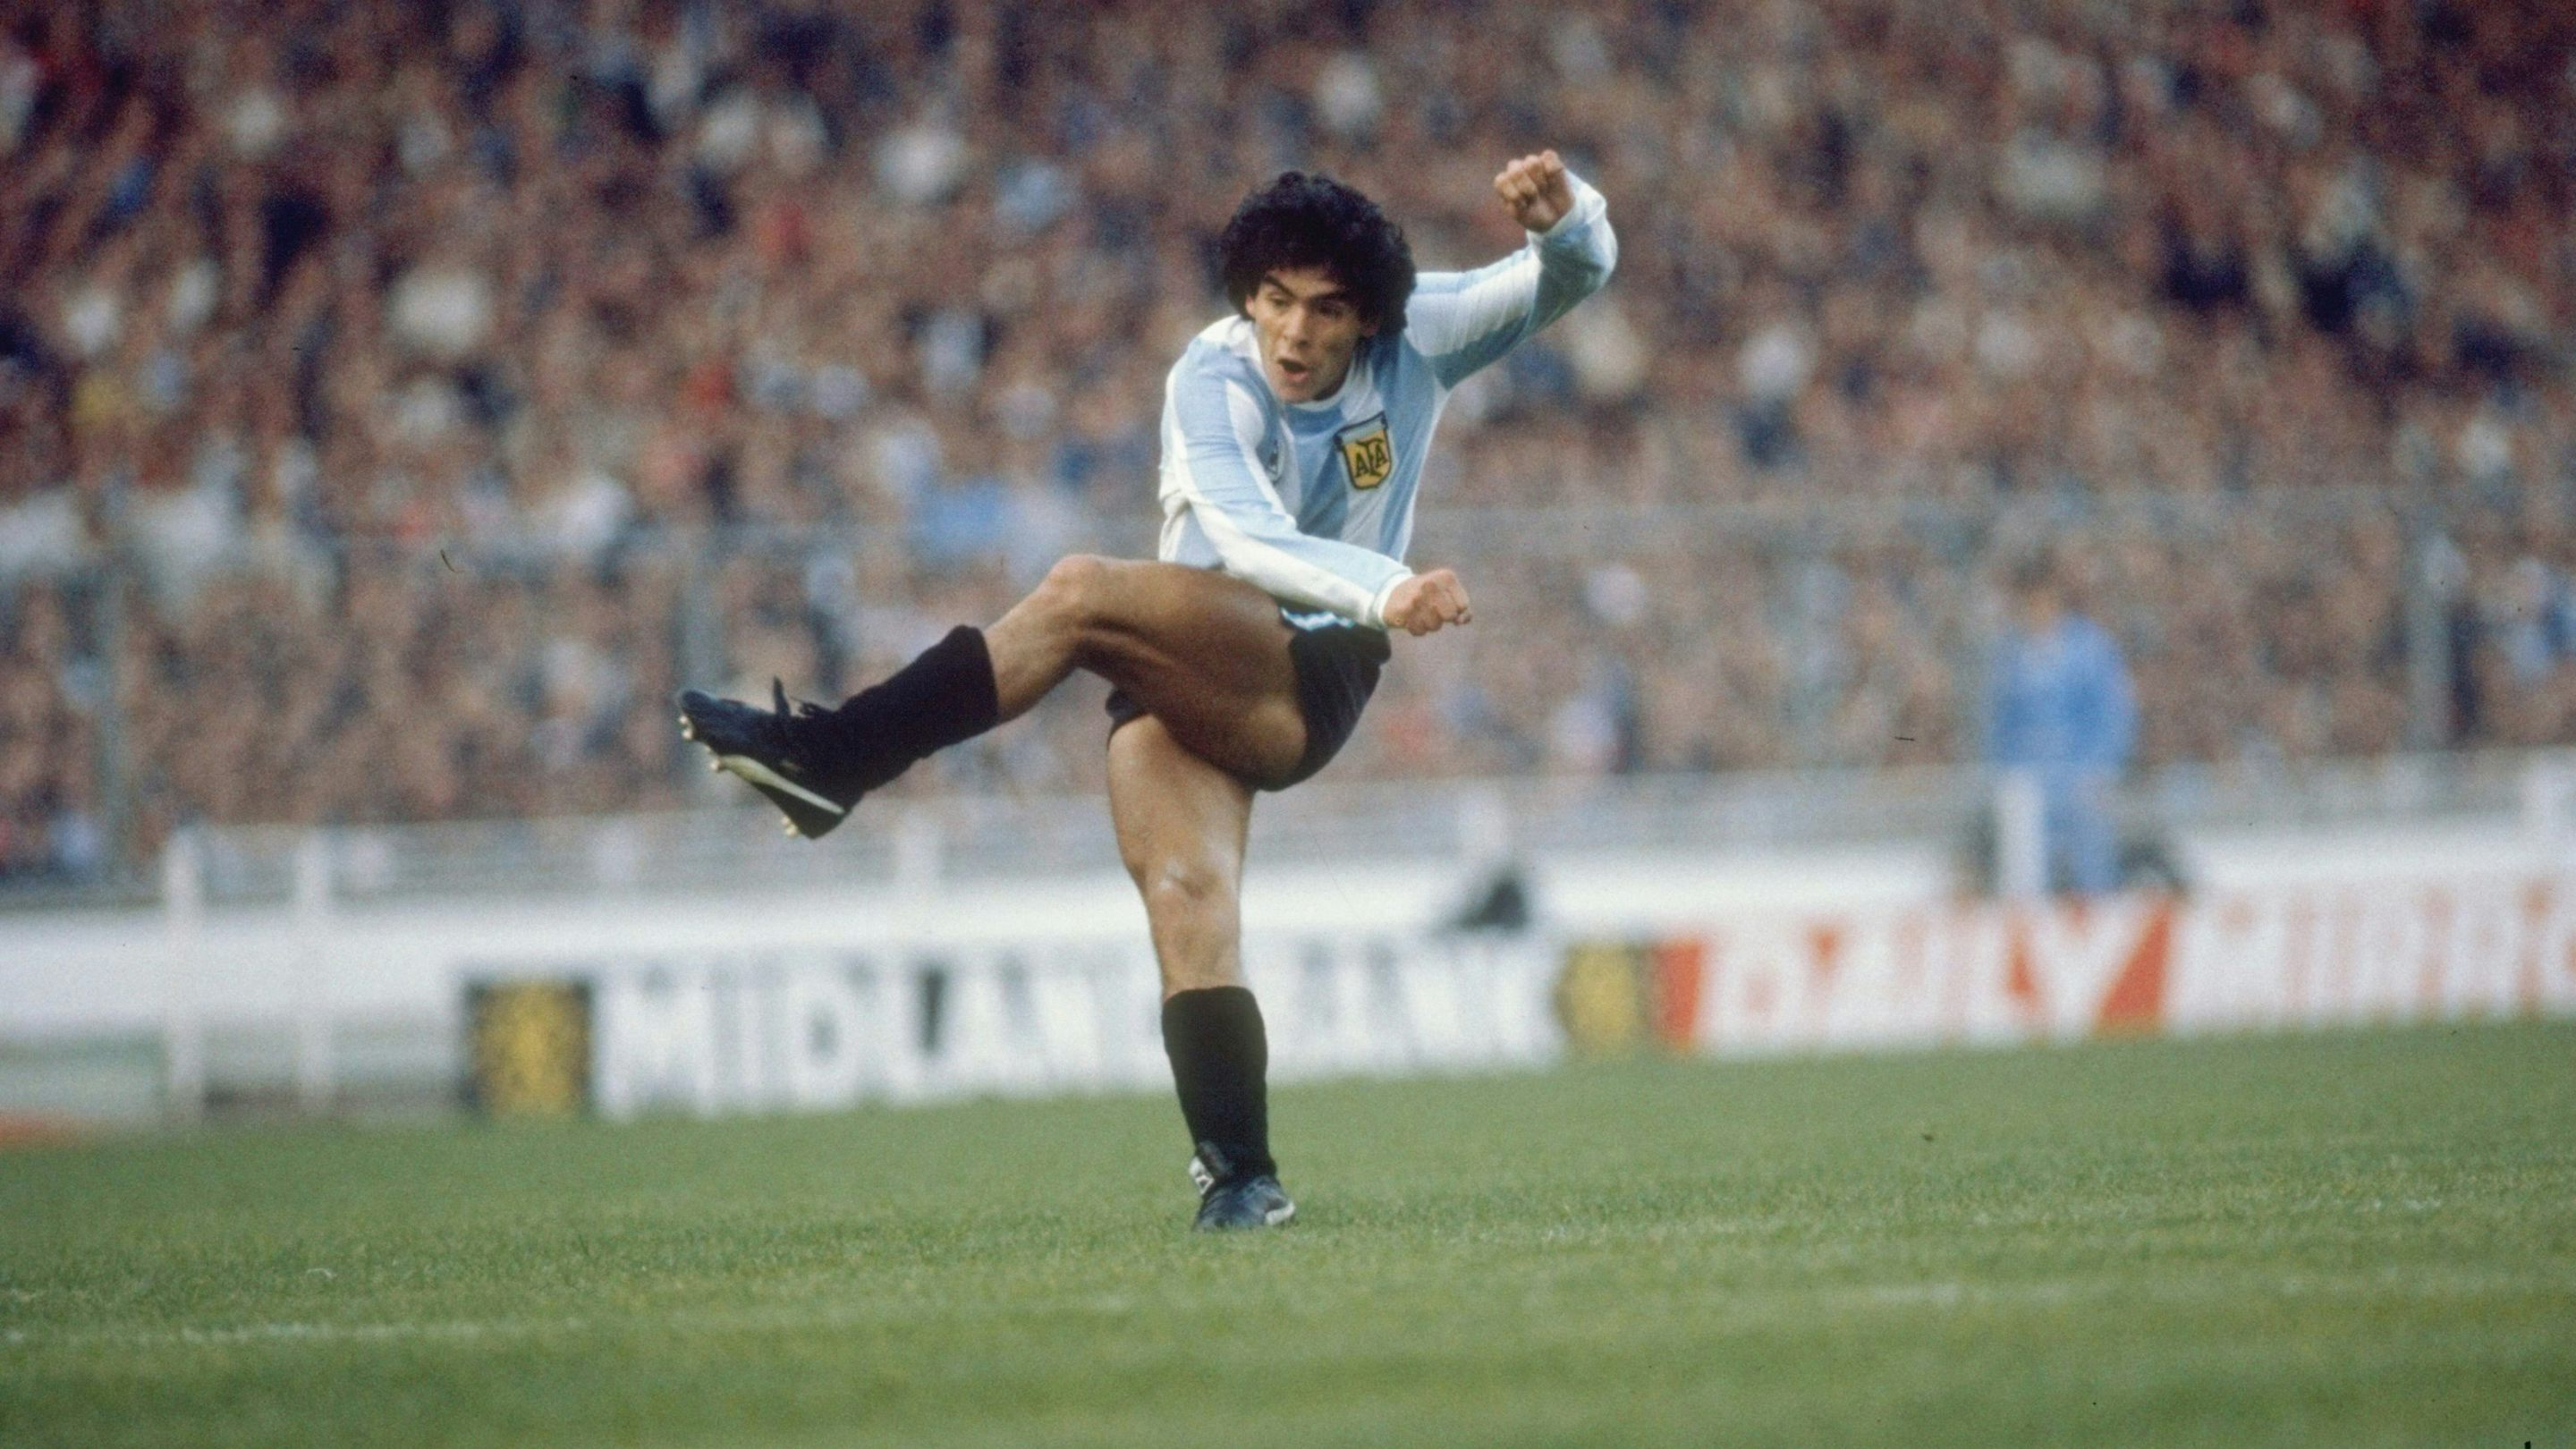 Pele and Maradona Wallpaper Discover more Diego Maradona, Football